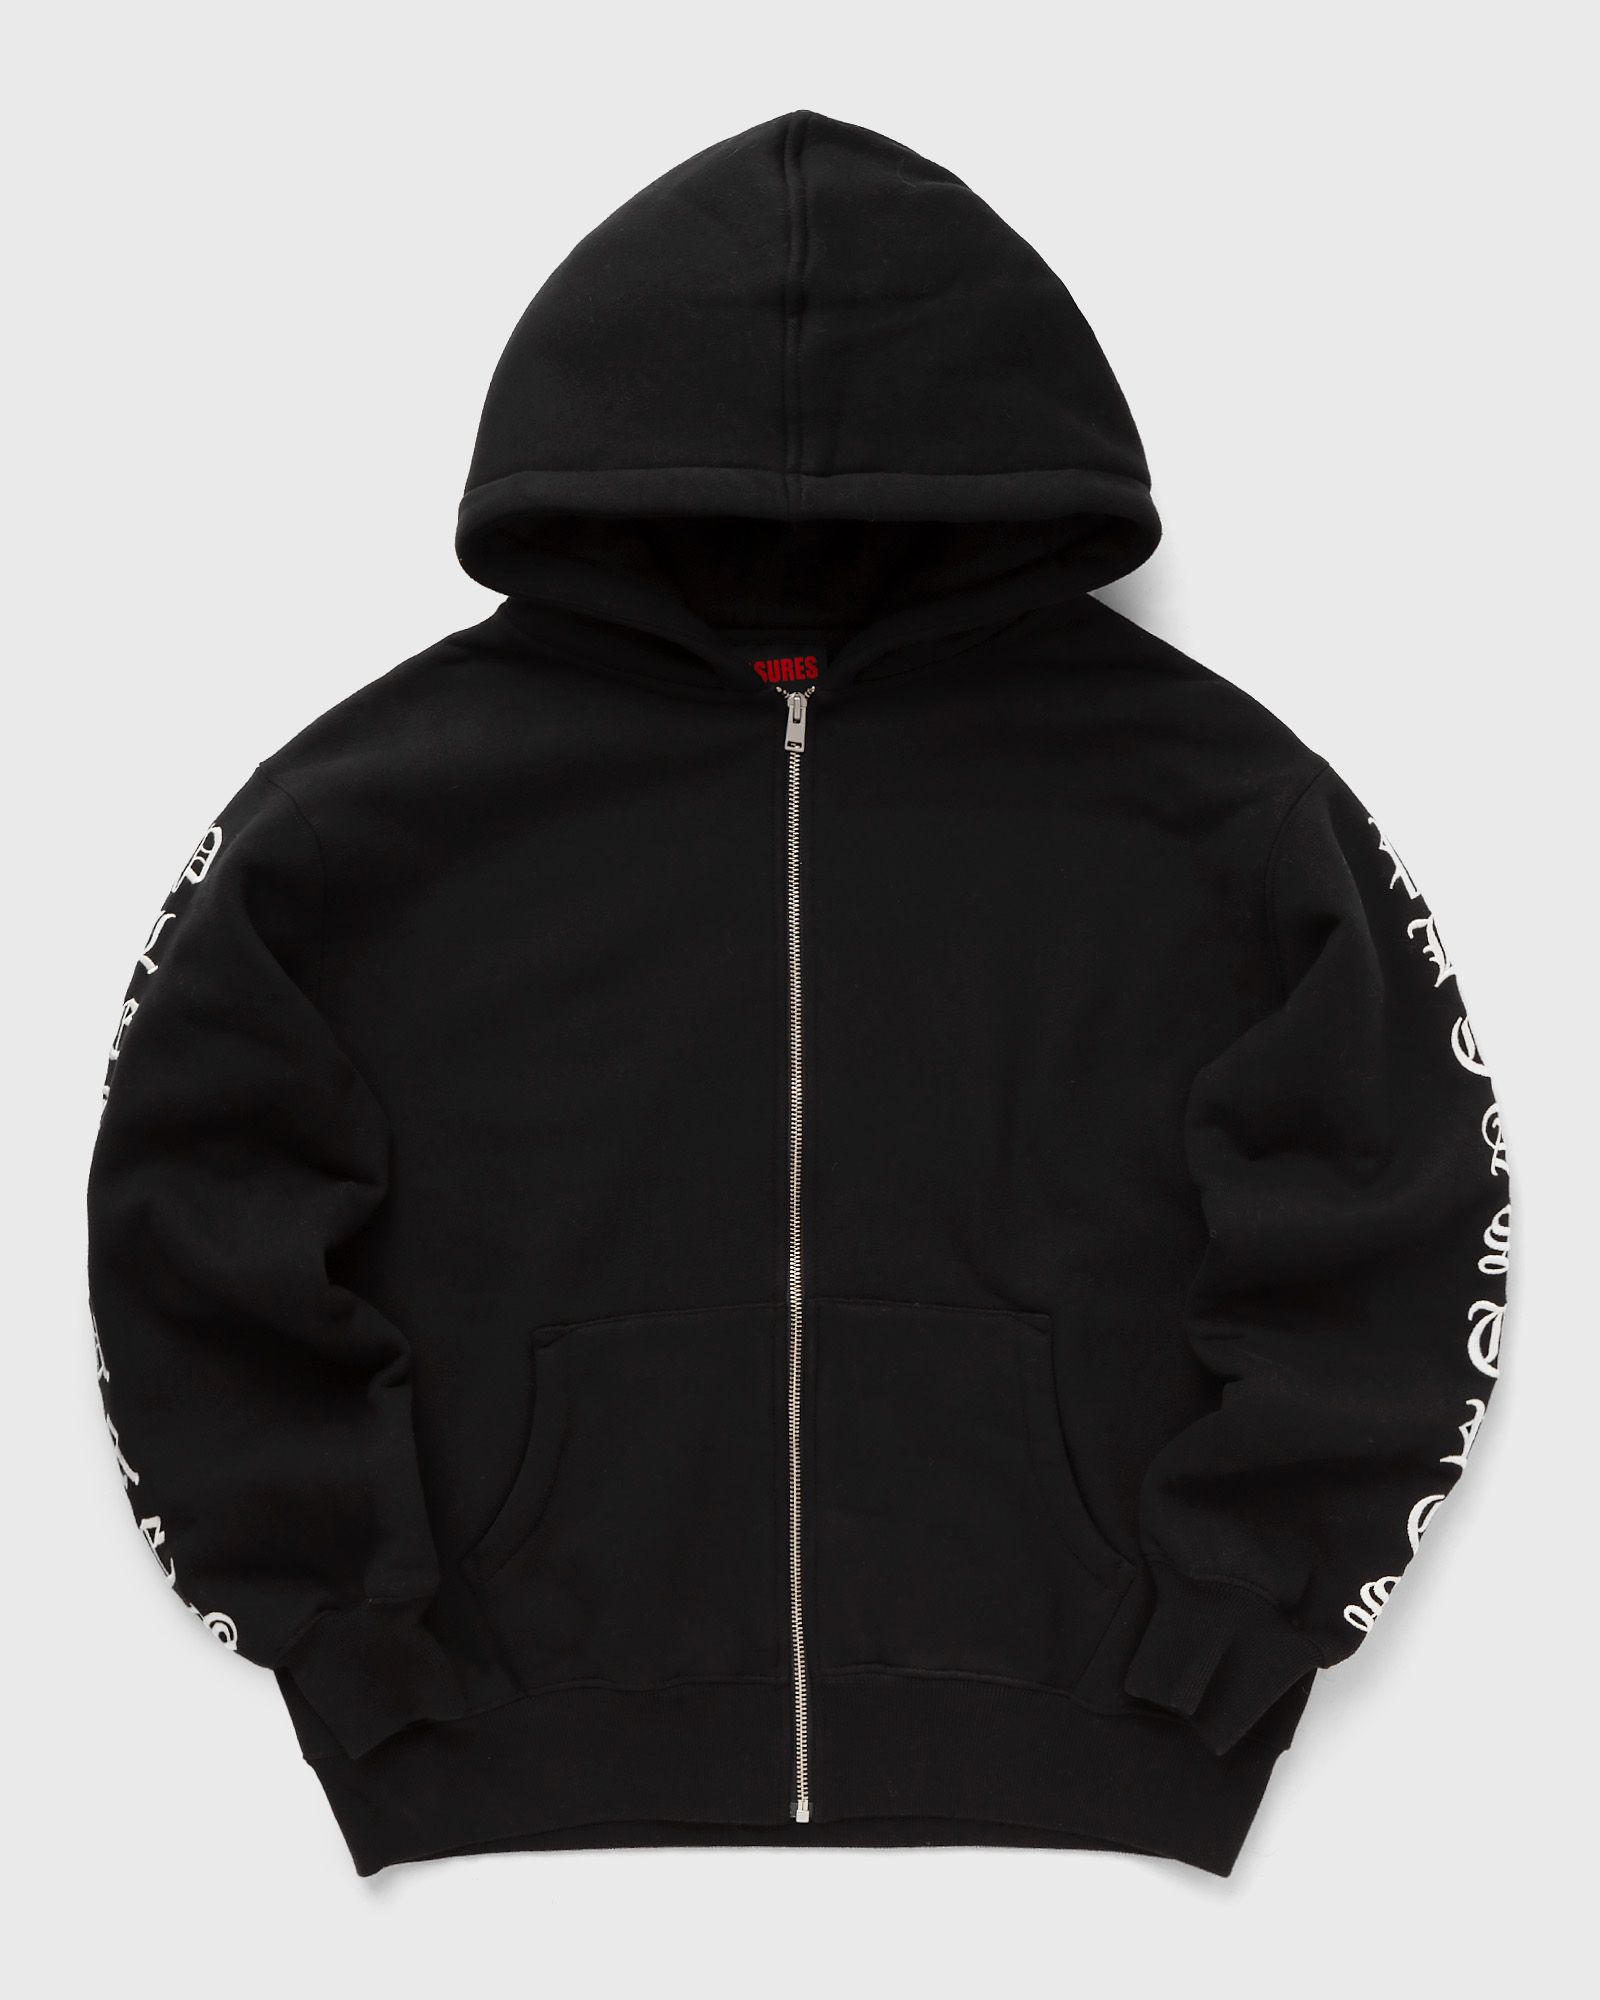 Pleasures - oe zip up hoodie men hoodies|zippers black in größe:xl